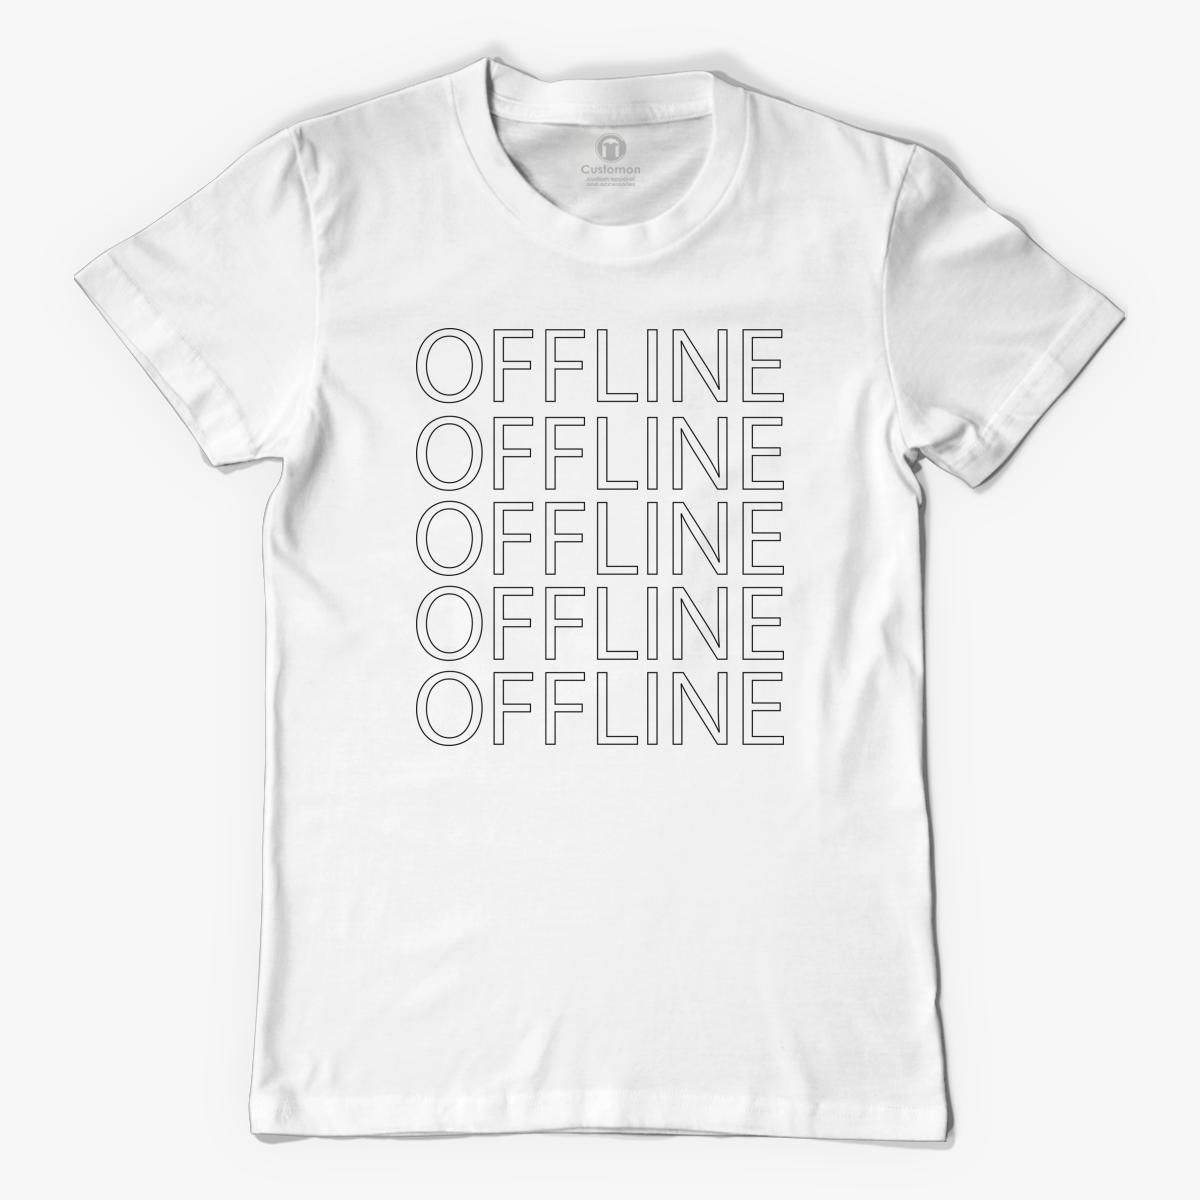  offline  Men s T  shirt  Customon